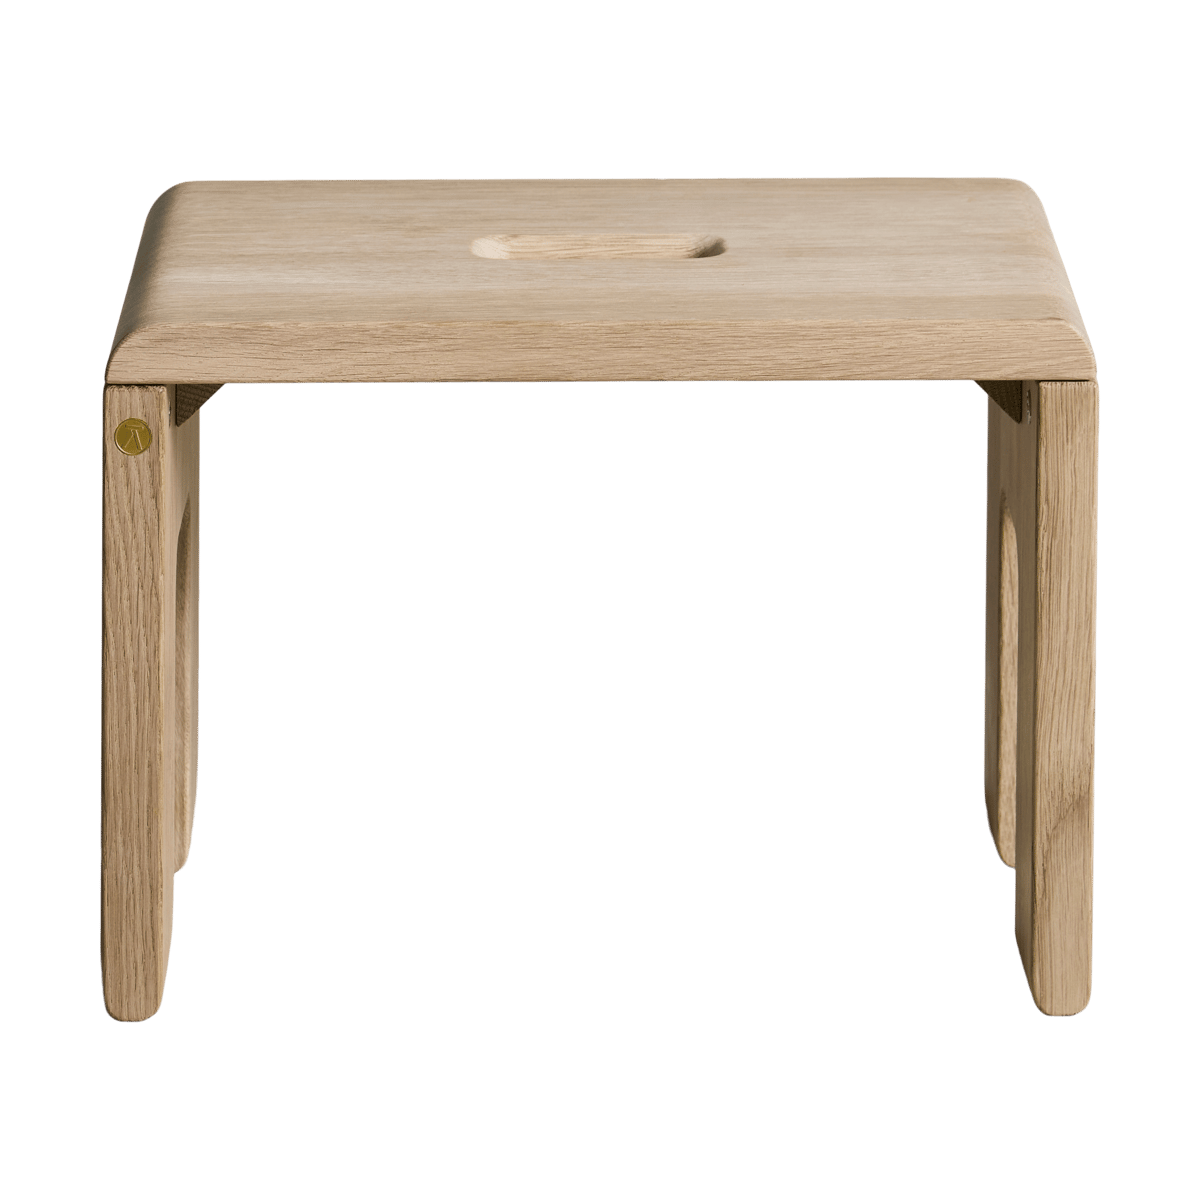 Andersen Furniture Reach jakkara 35x25x25 cm Oak